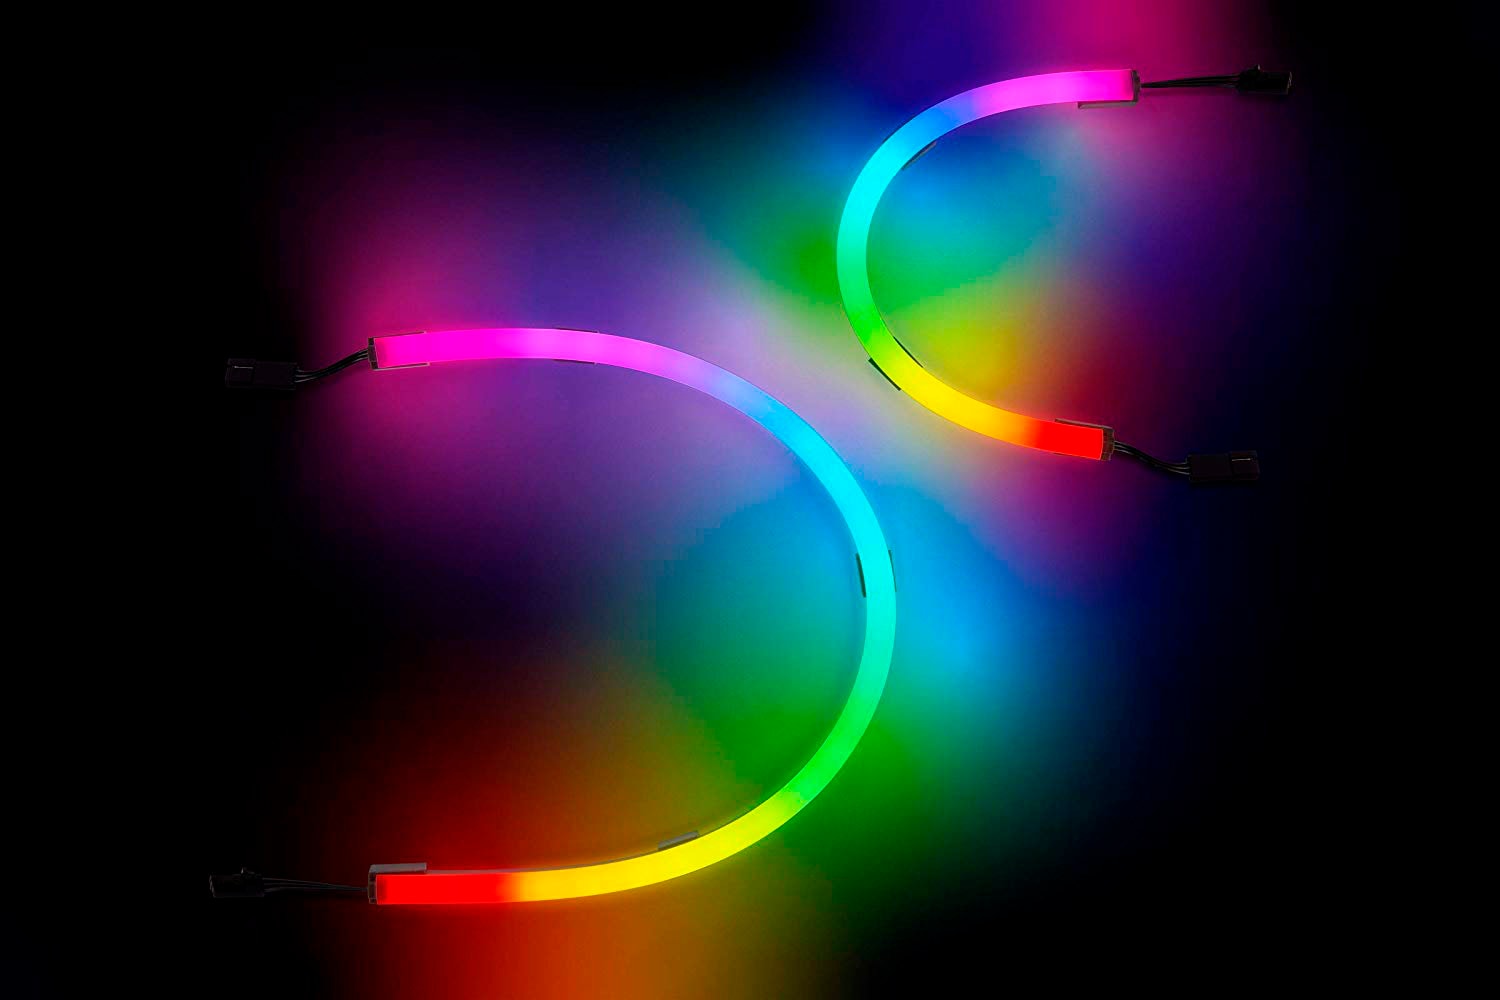 Corsair LED-Streifen »iCUE LS100 Smart Lighting Strip« auf Raten kaufen